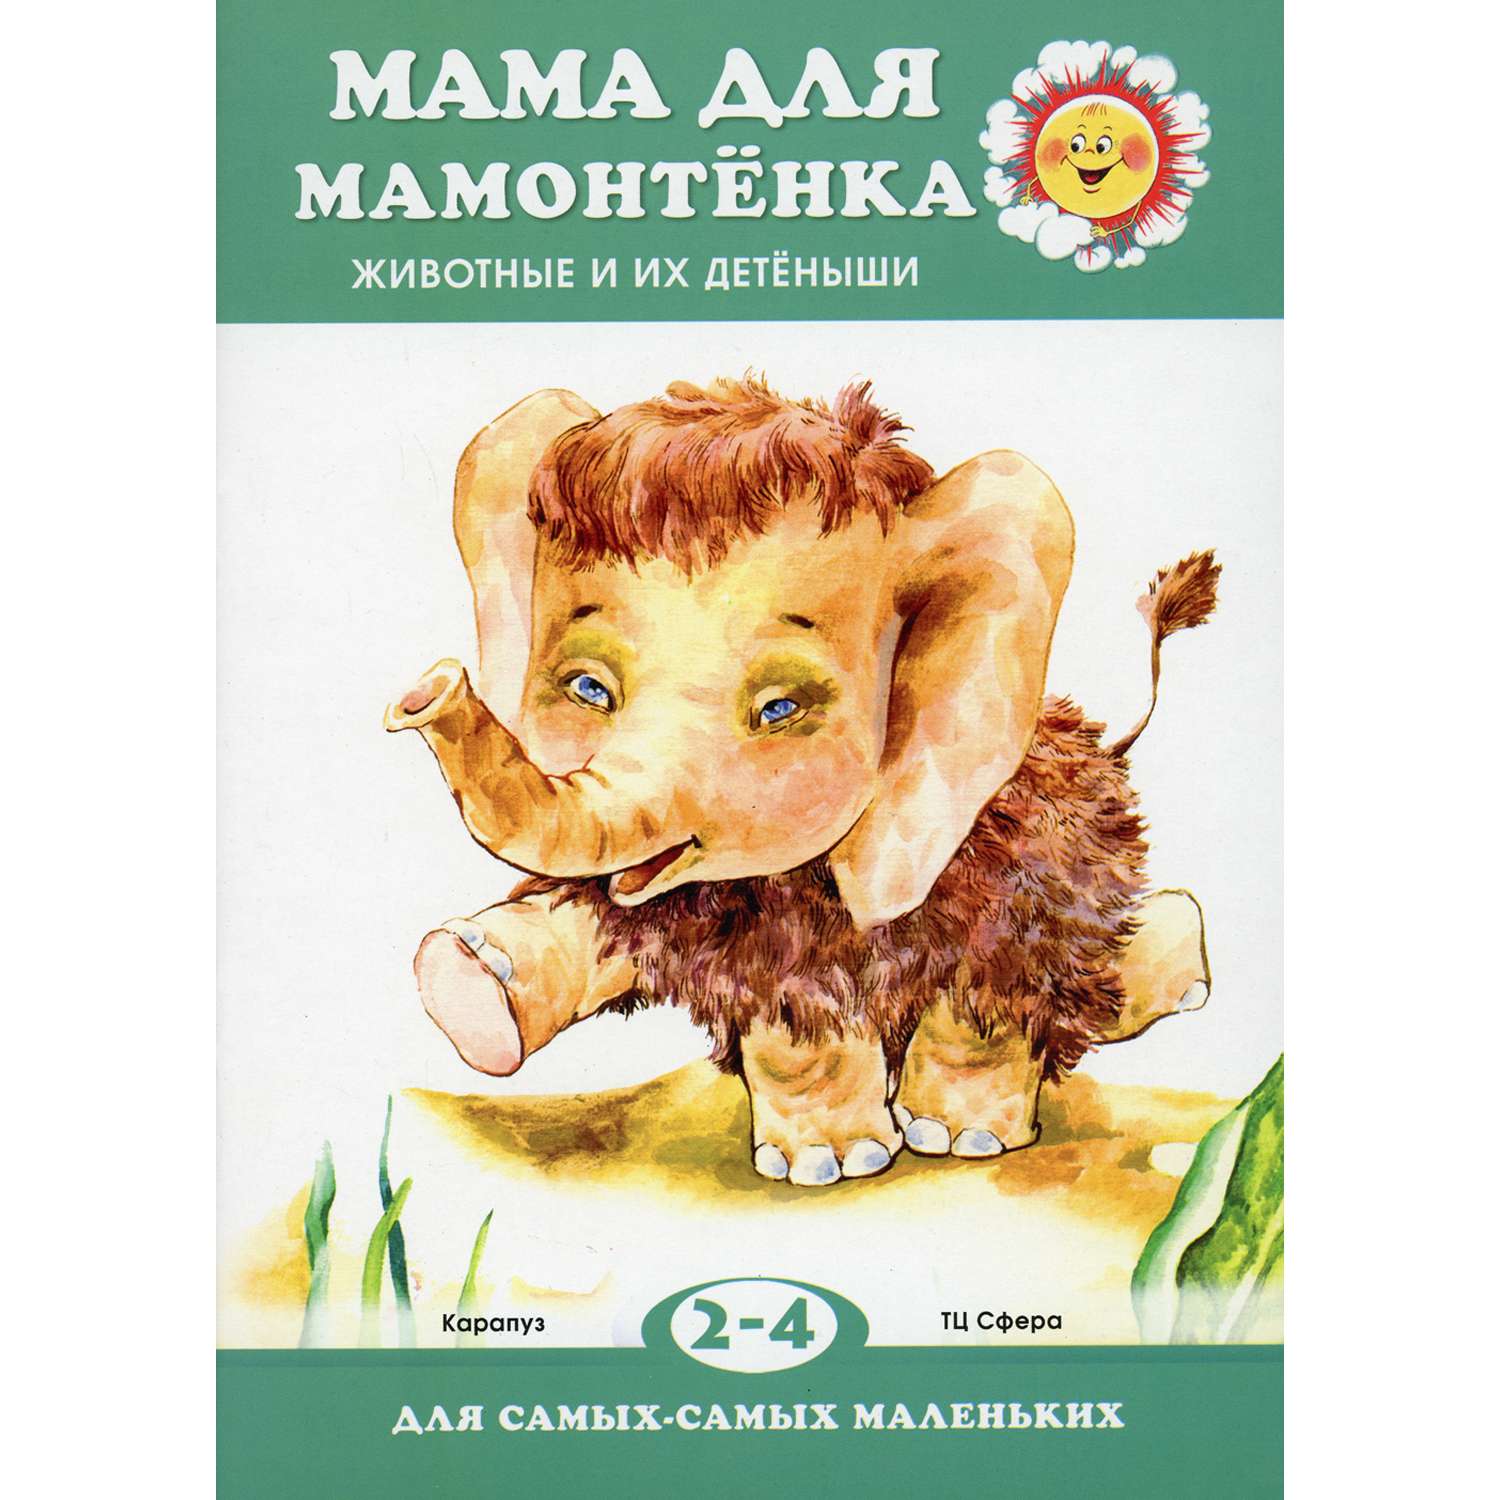 Книга ТЦ Сфера Мама для мамонтенка. Животные и их детеныши для детей 2-4 лет - фото 1